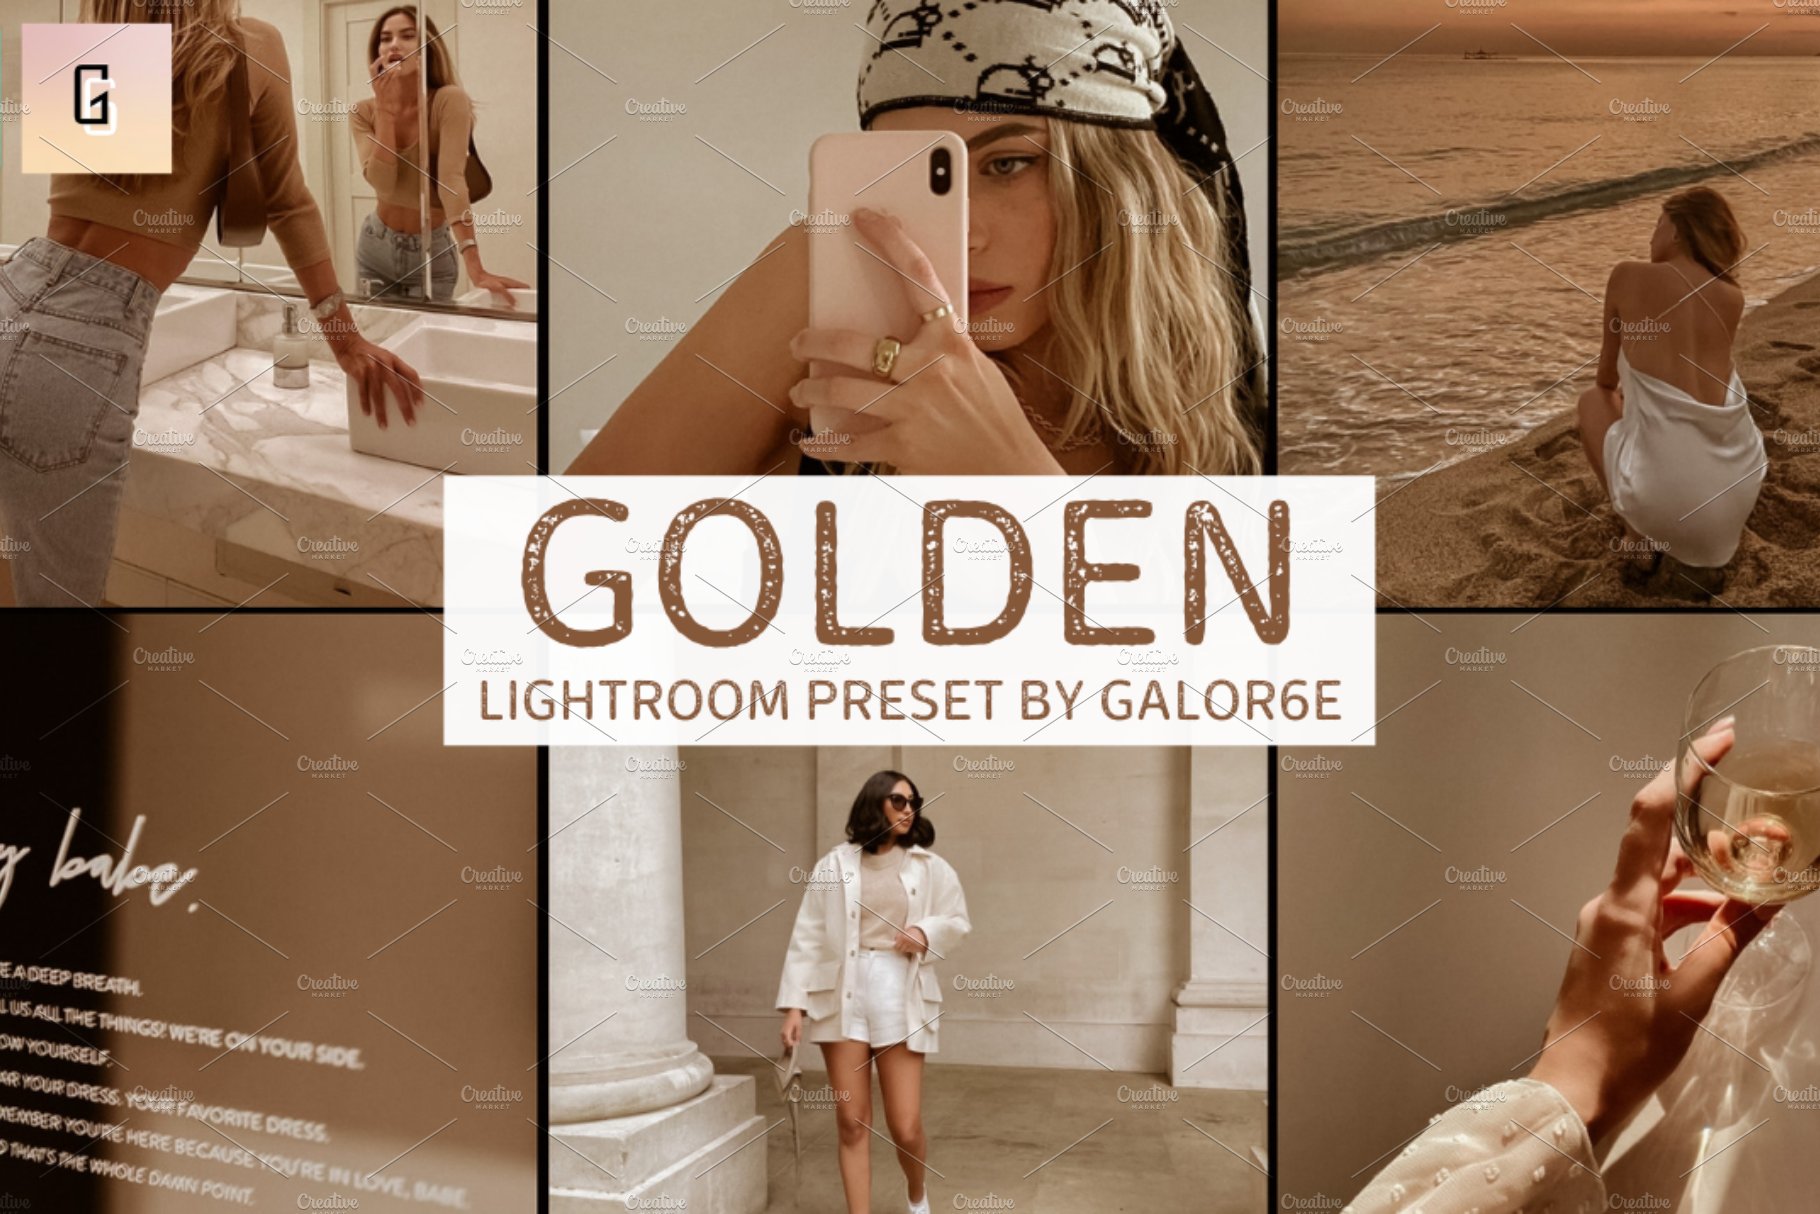 Lightroom Preset GOLDEN by GALOR6Ecover image.